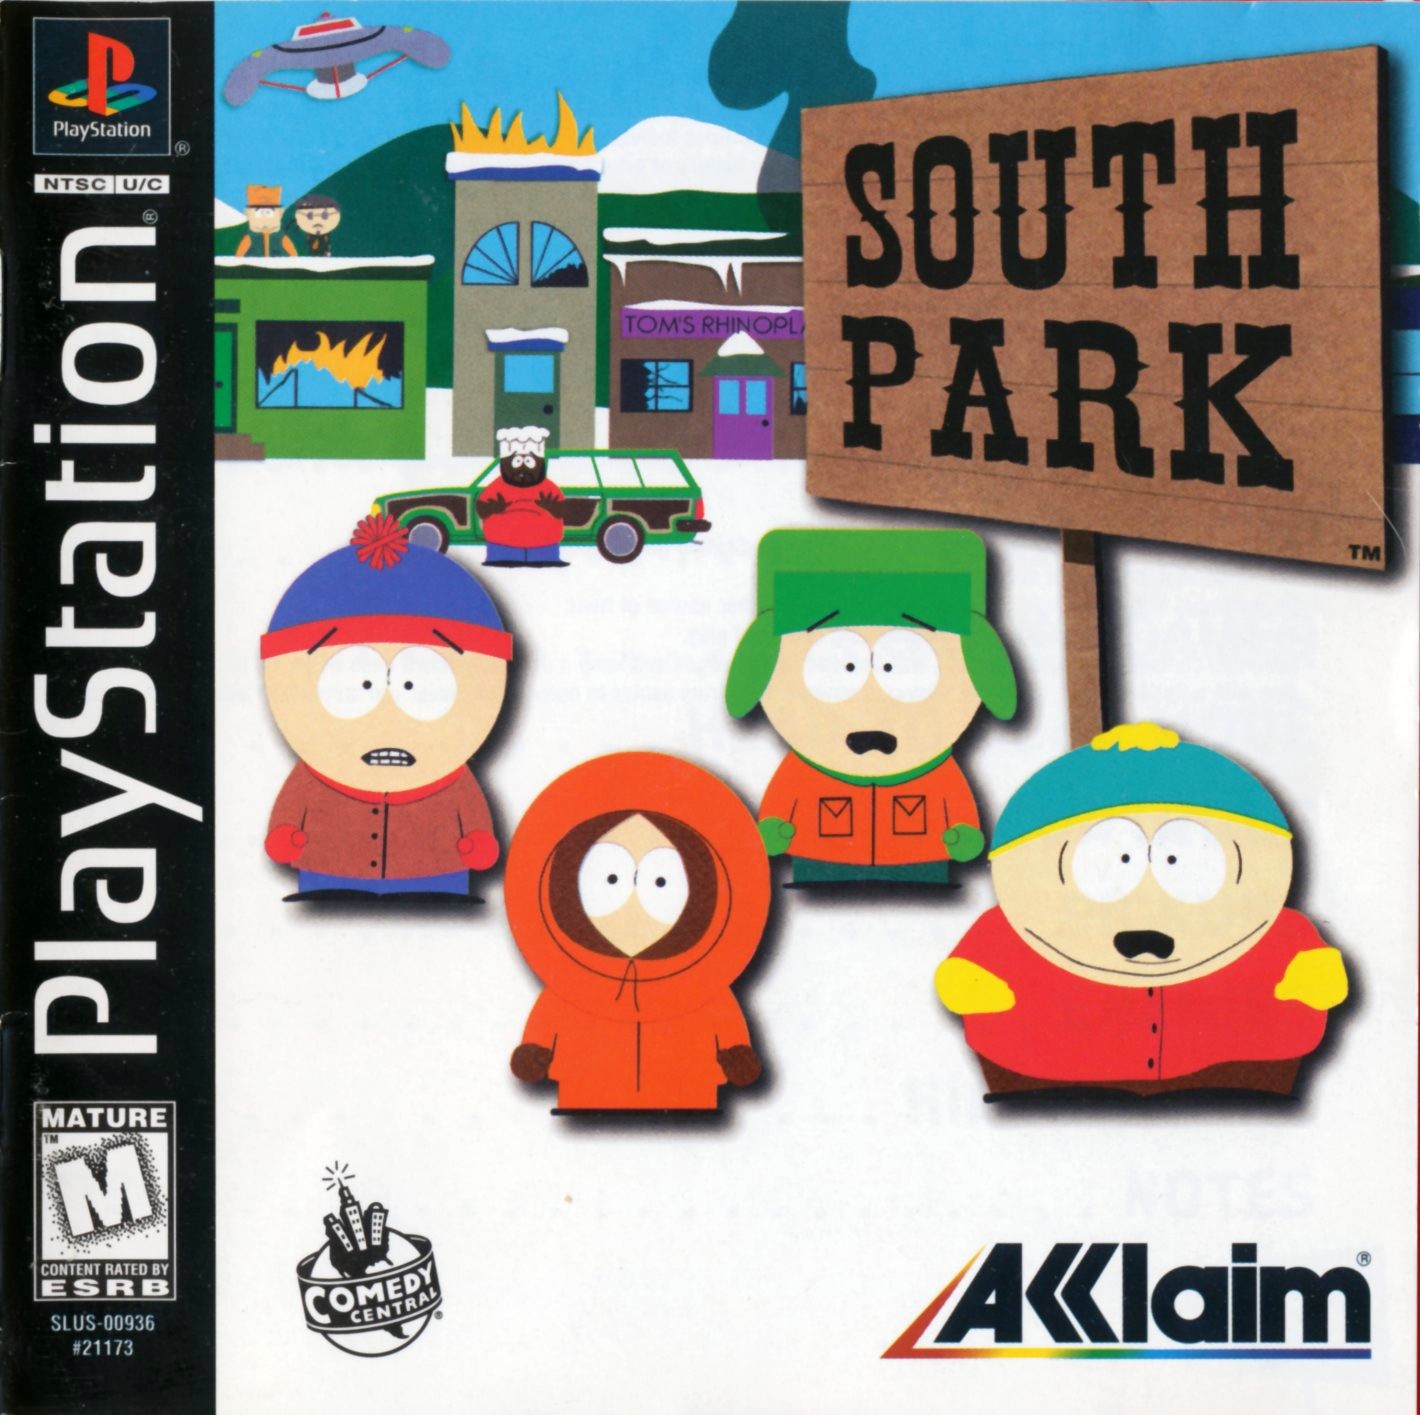 South Park (Video Game) South Park Archives Fandom